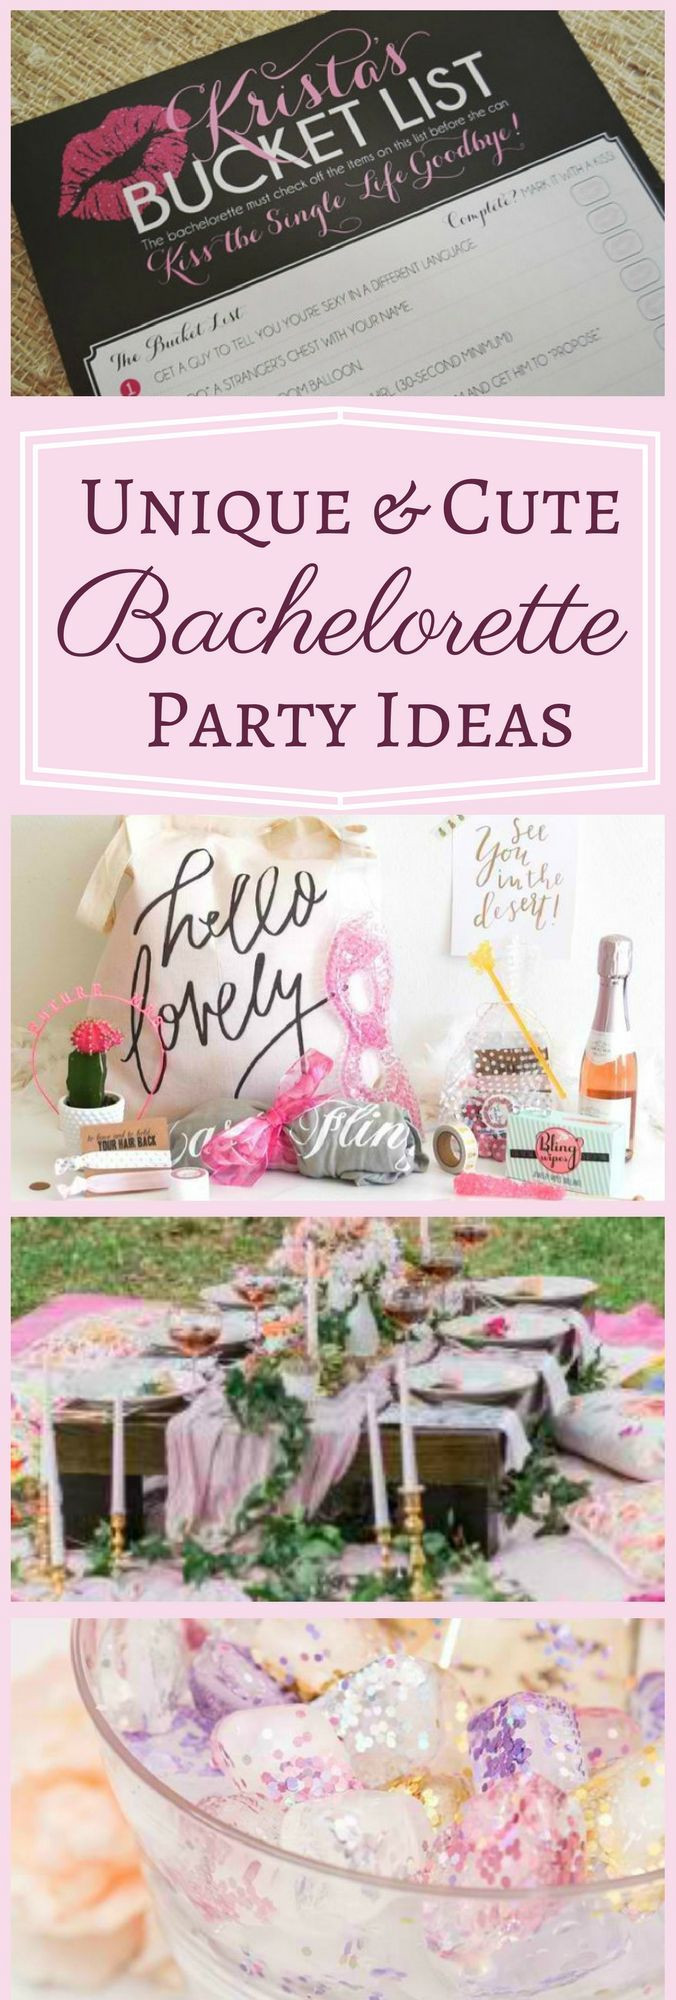 Different Bachelorette Party Ideas
 Best 25 Unique bachelorette party ideas ideas on